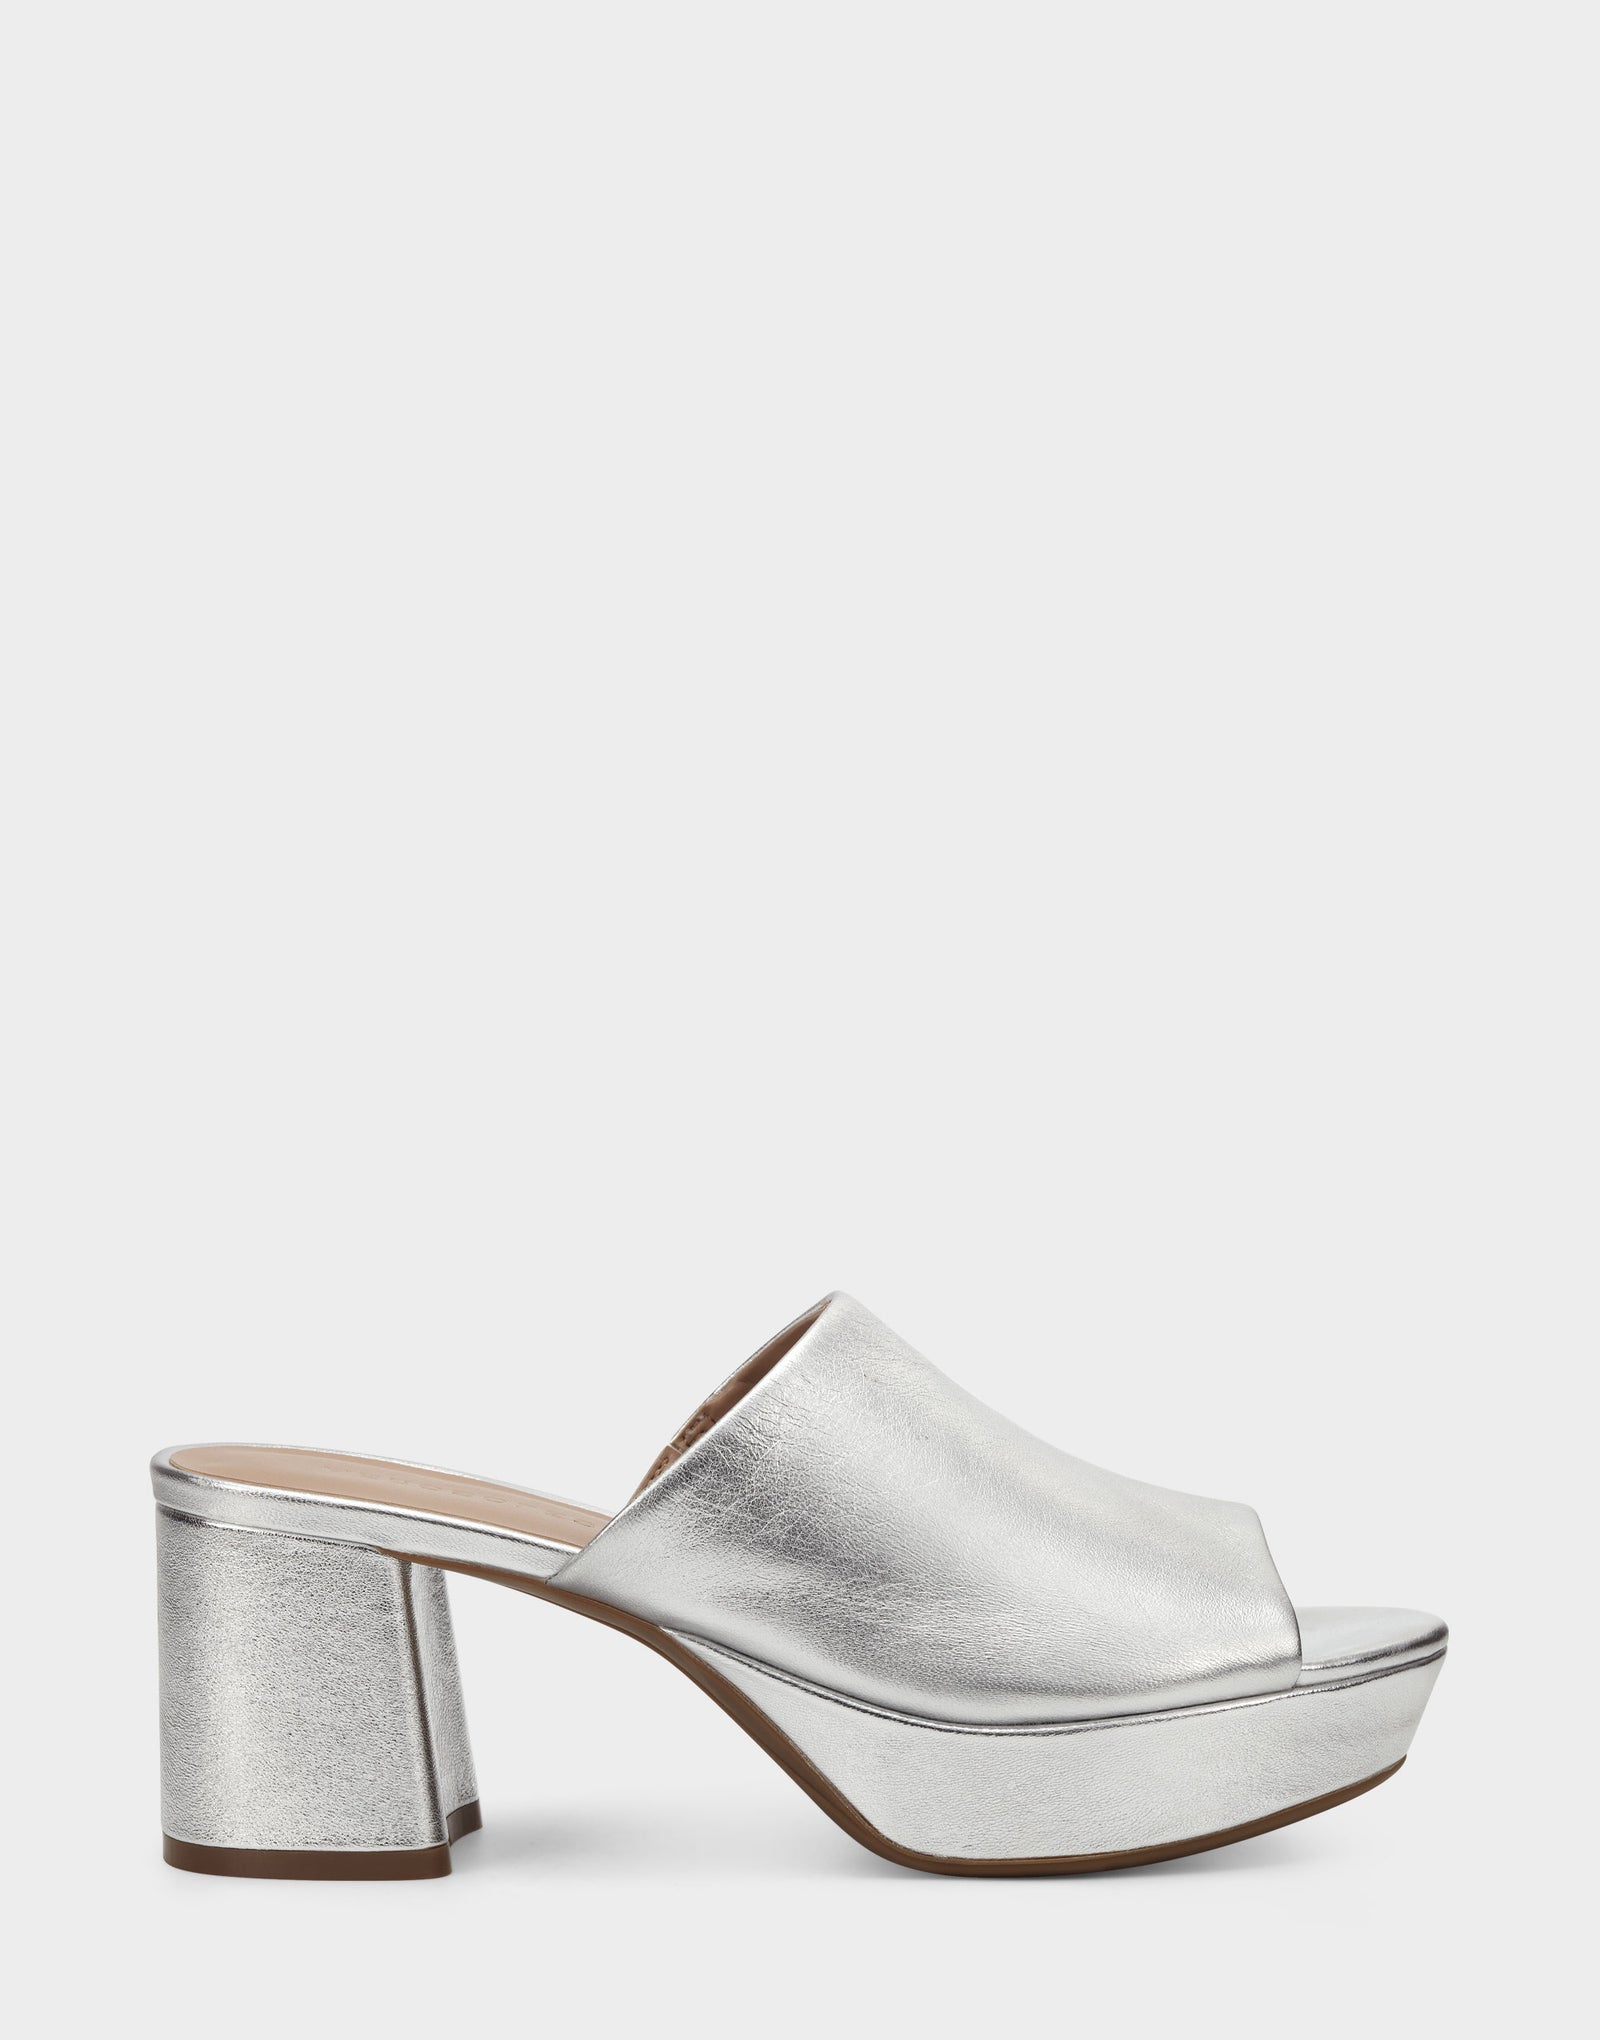 Women's Sandal in Silver